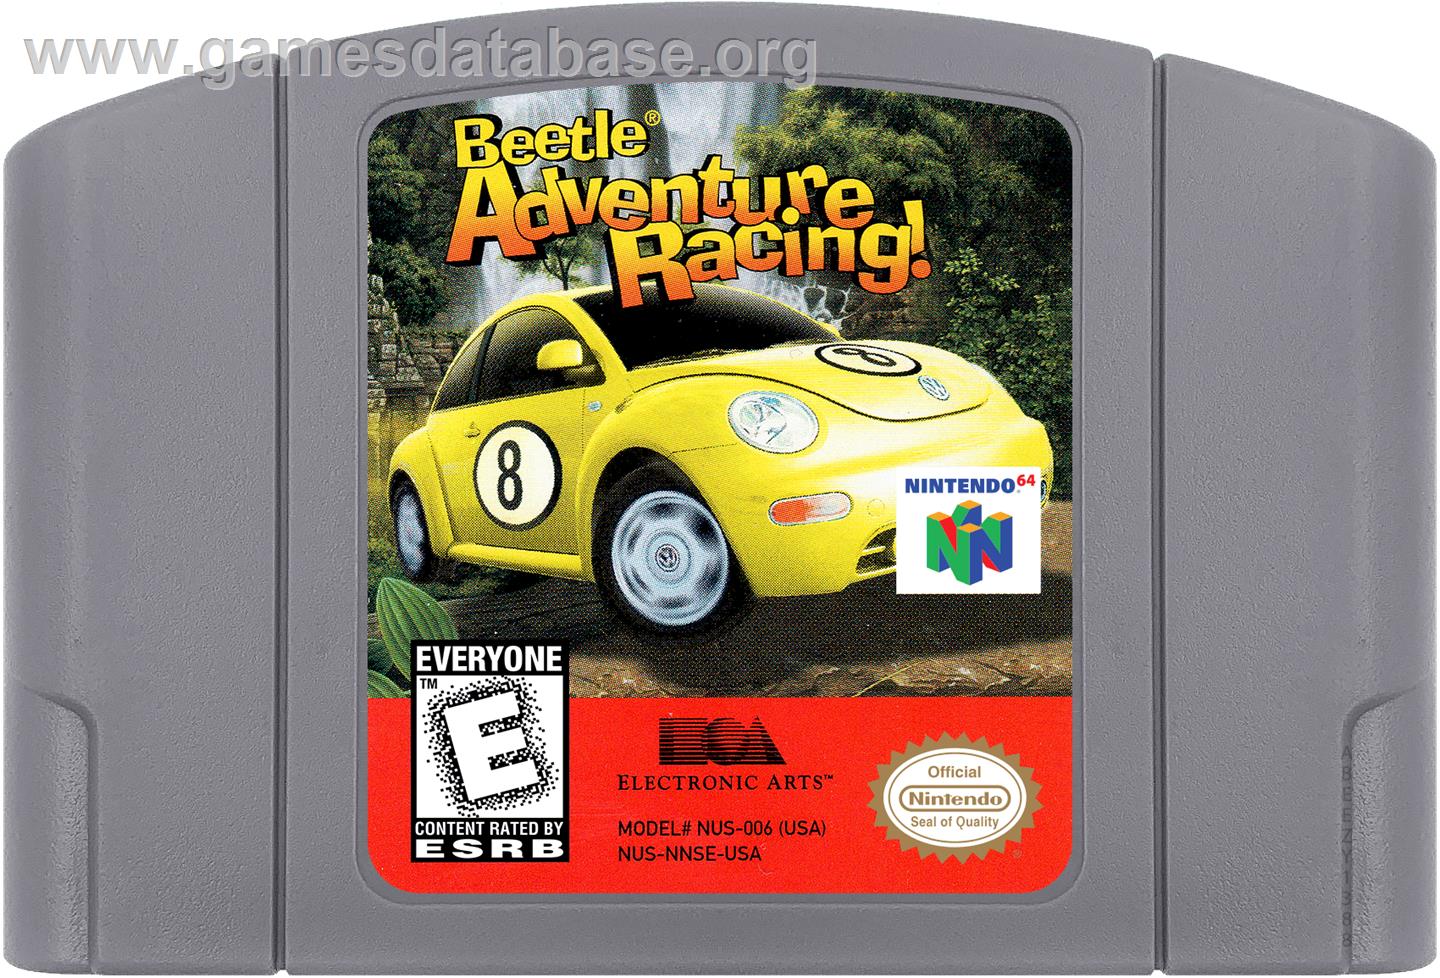 Beetle Adventure Racing - Nintendo N64 - Artwork - Cartridge